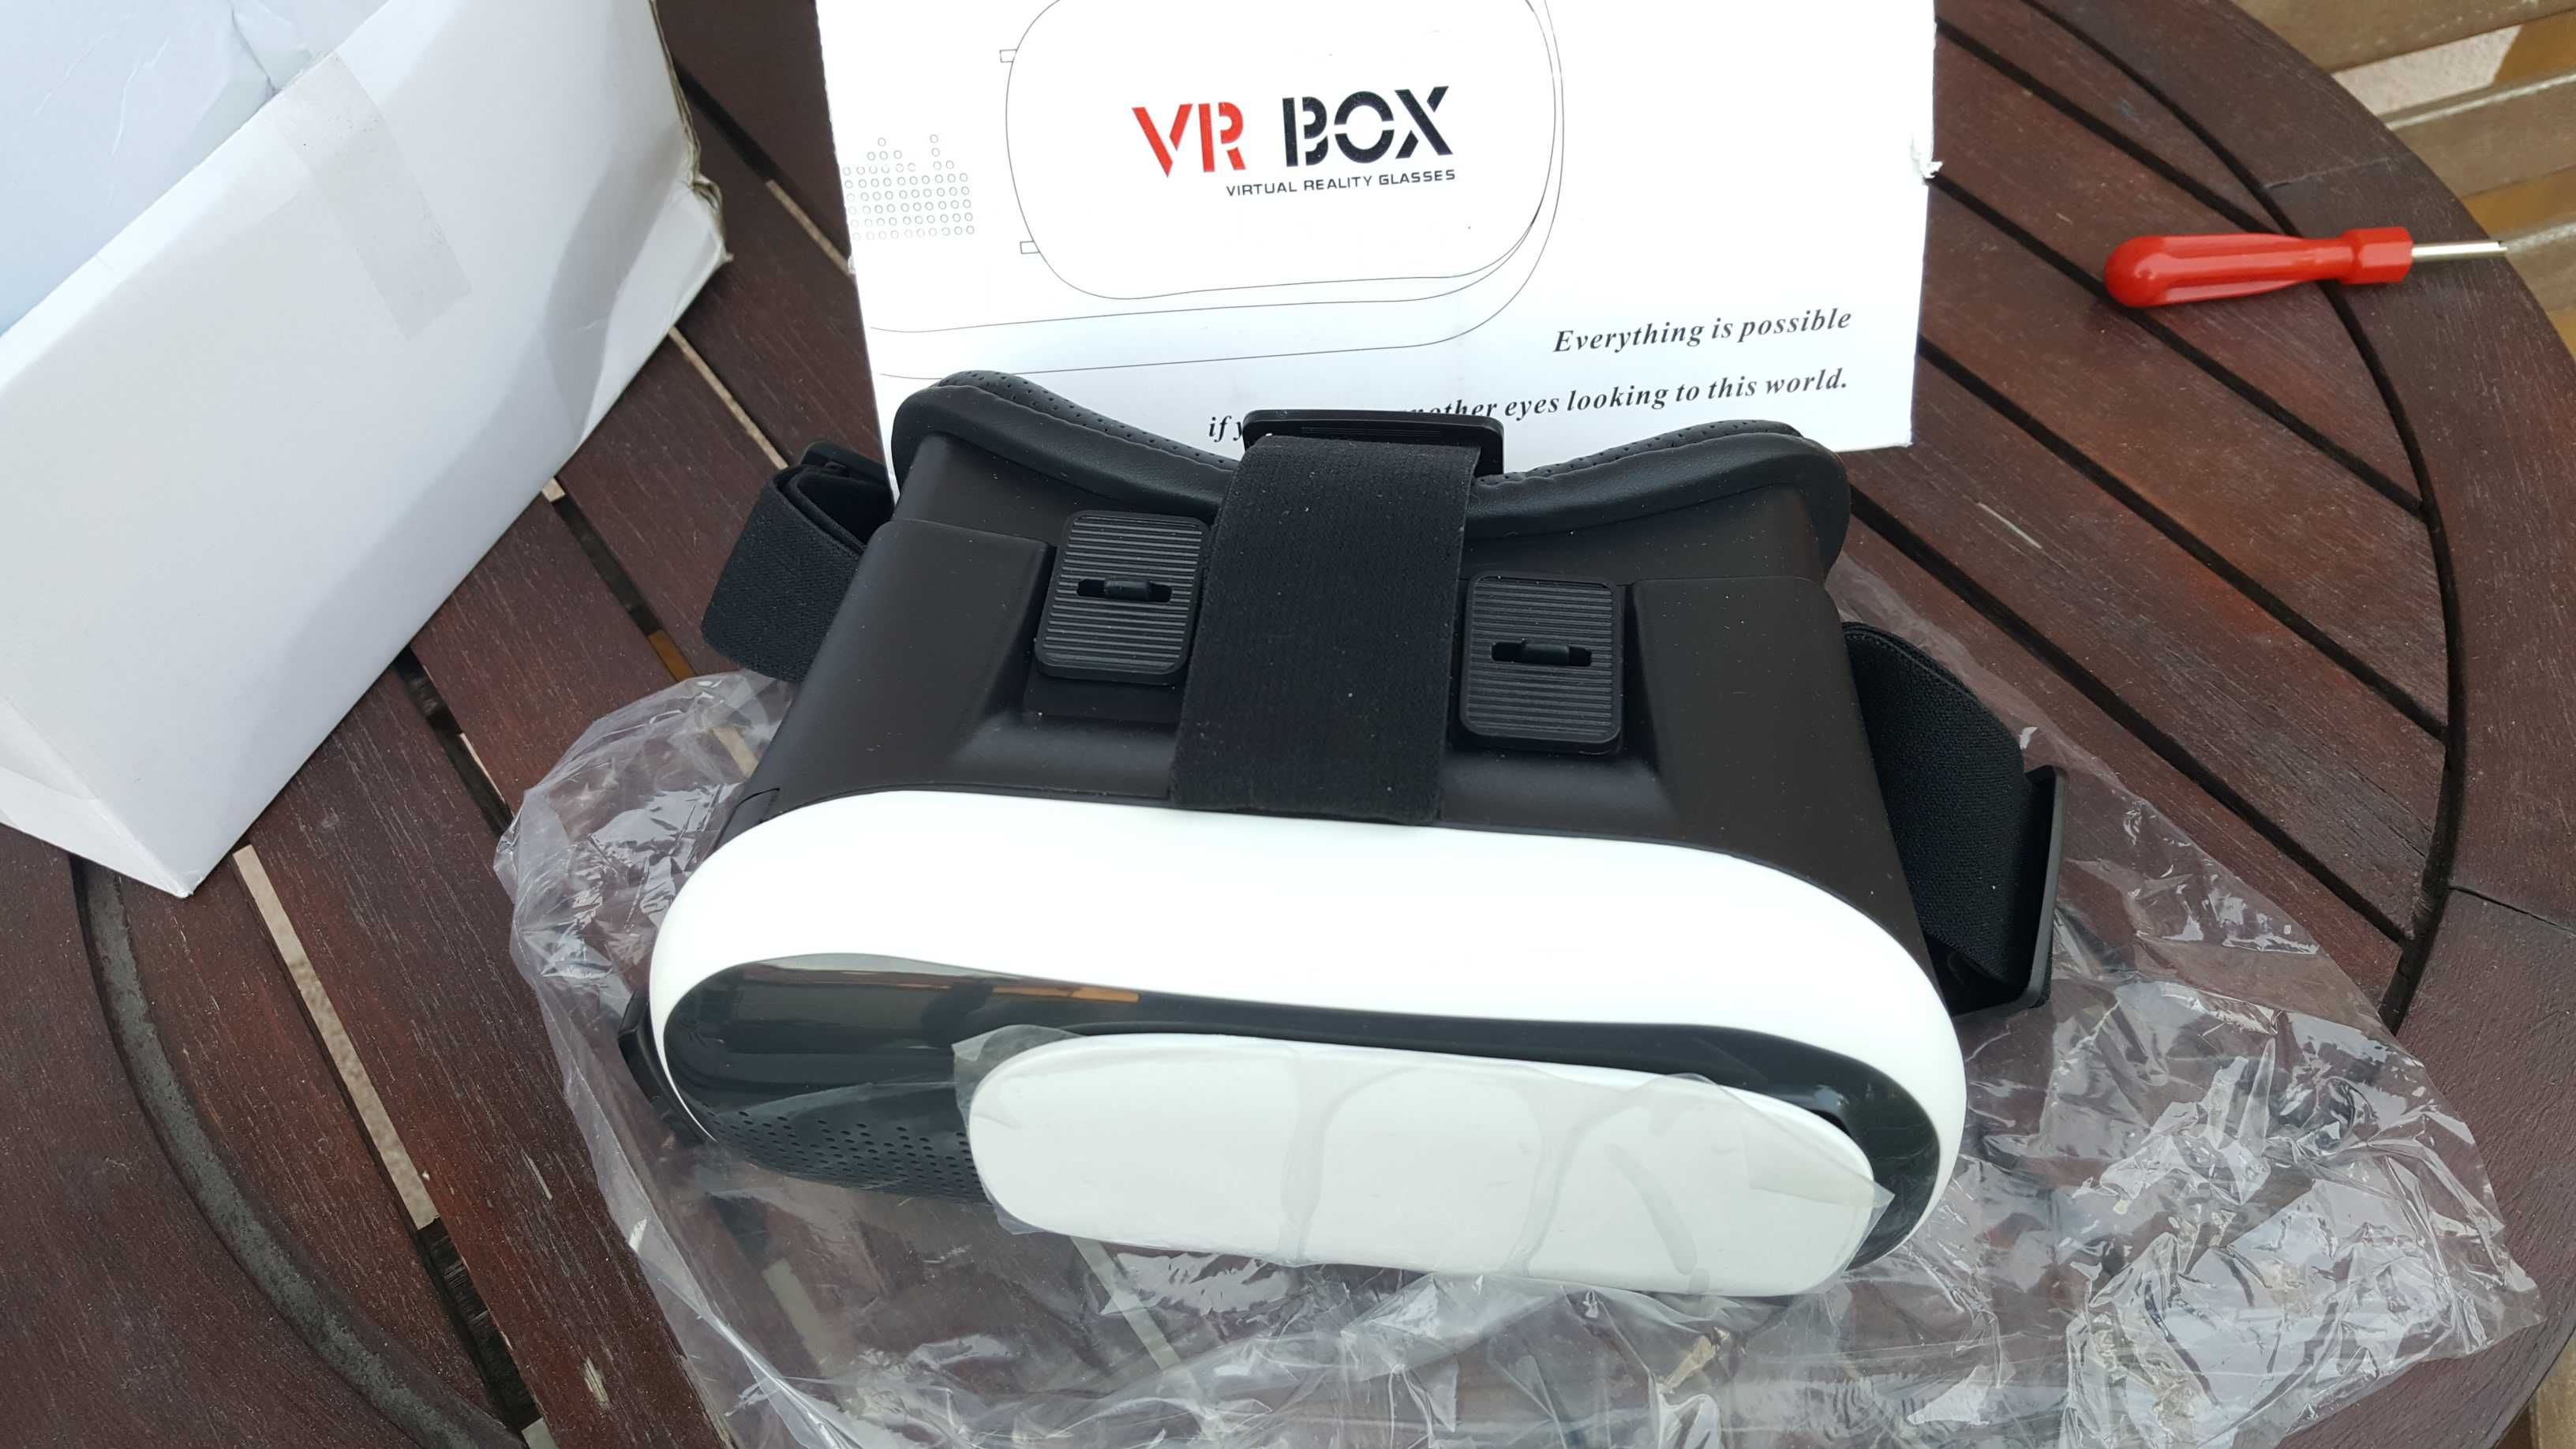 Nowe okulary VR BOX wysyłka 5zł okazja